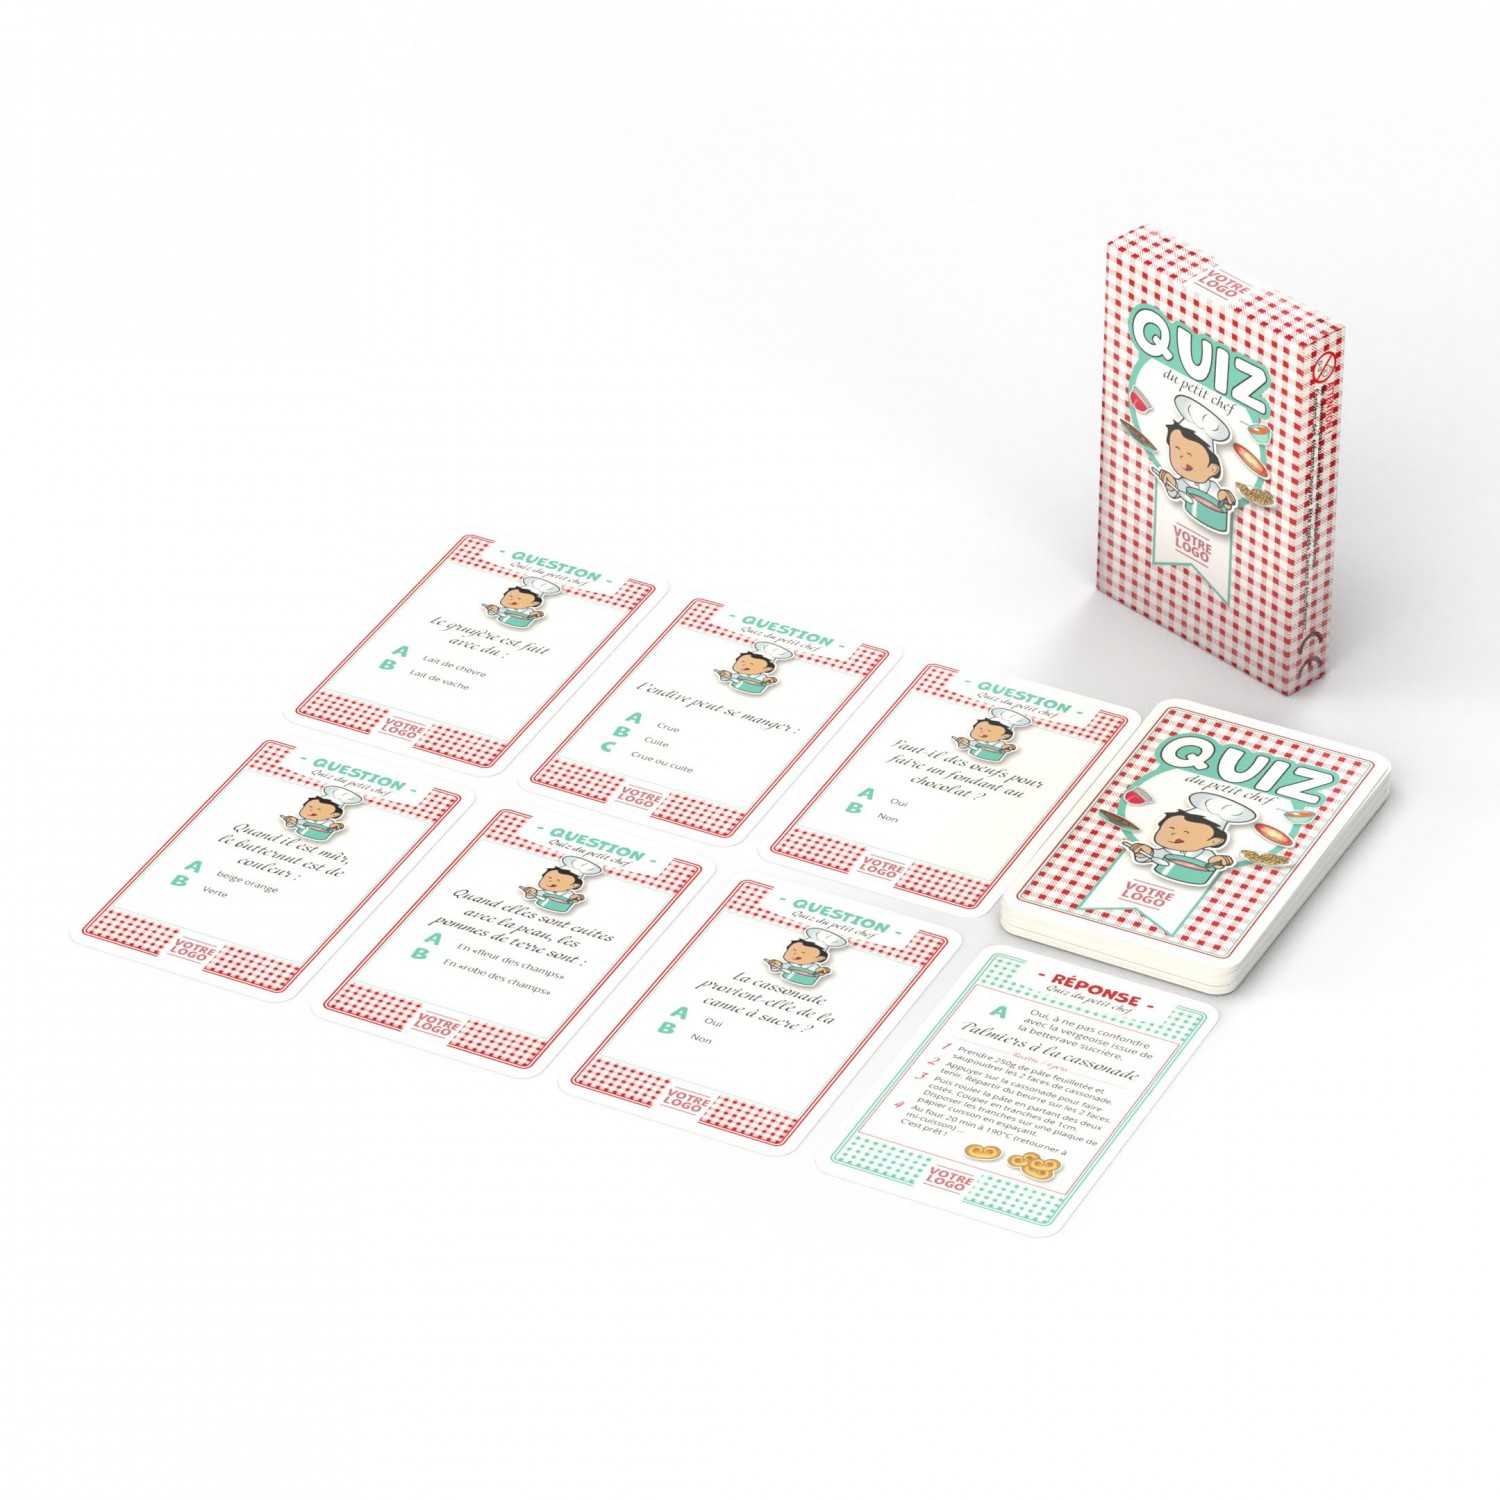 Jeu "Quiz du petit chef" - 44 cartes personnalisables - thème cuisine